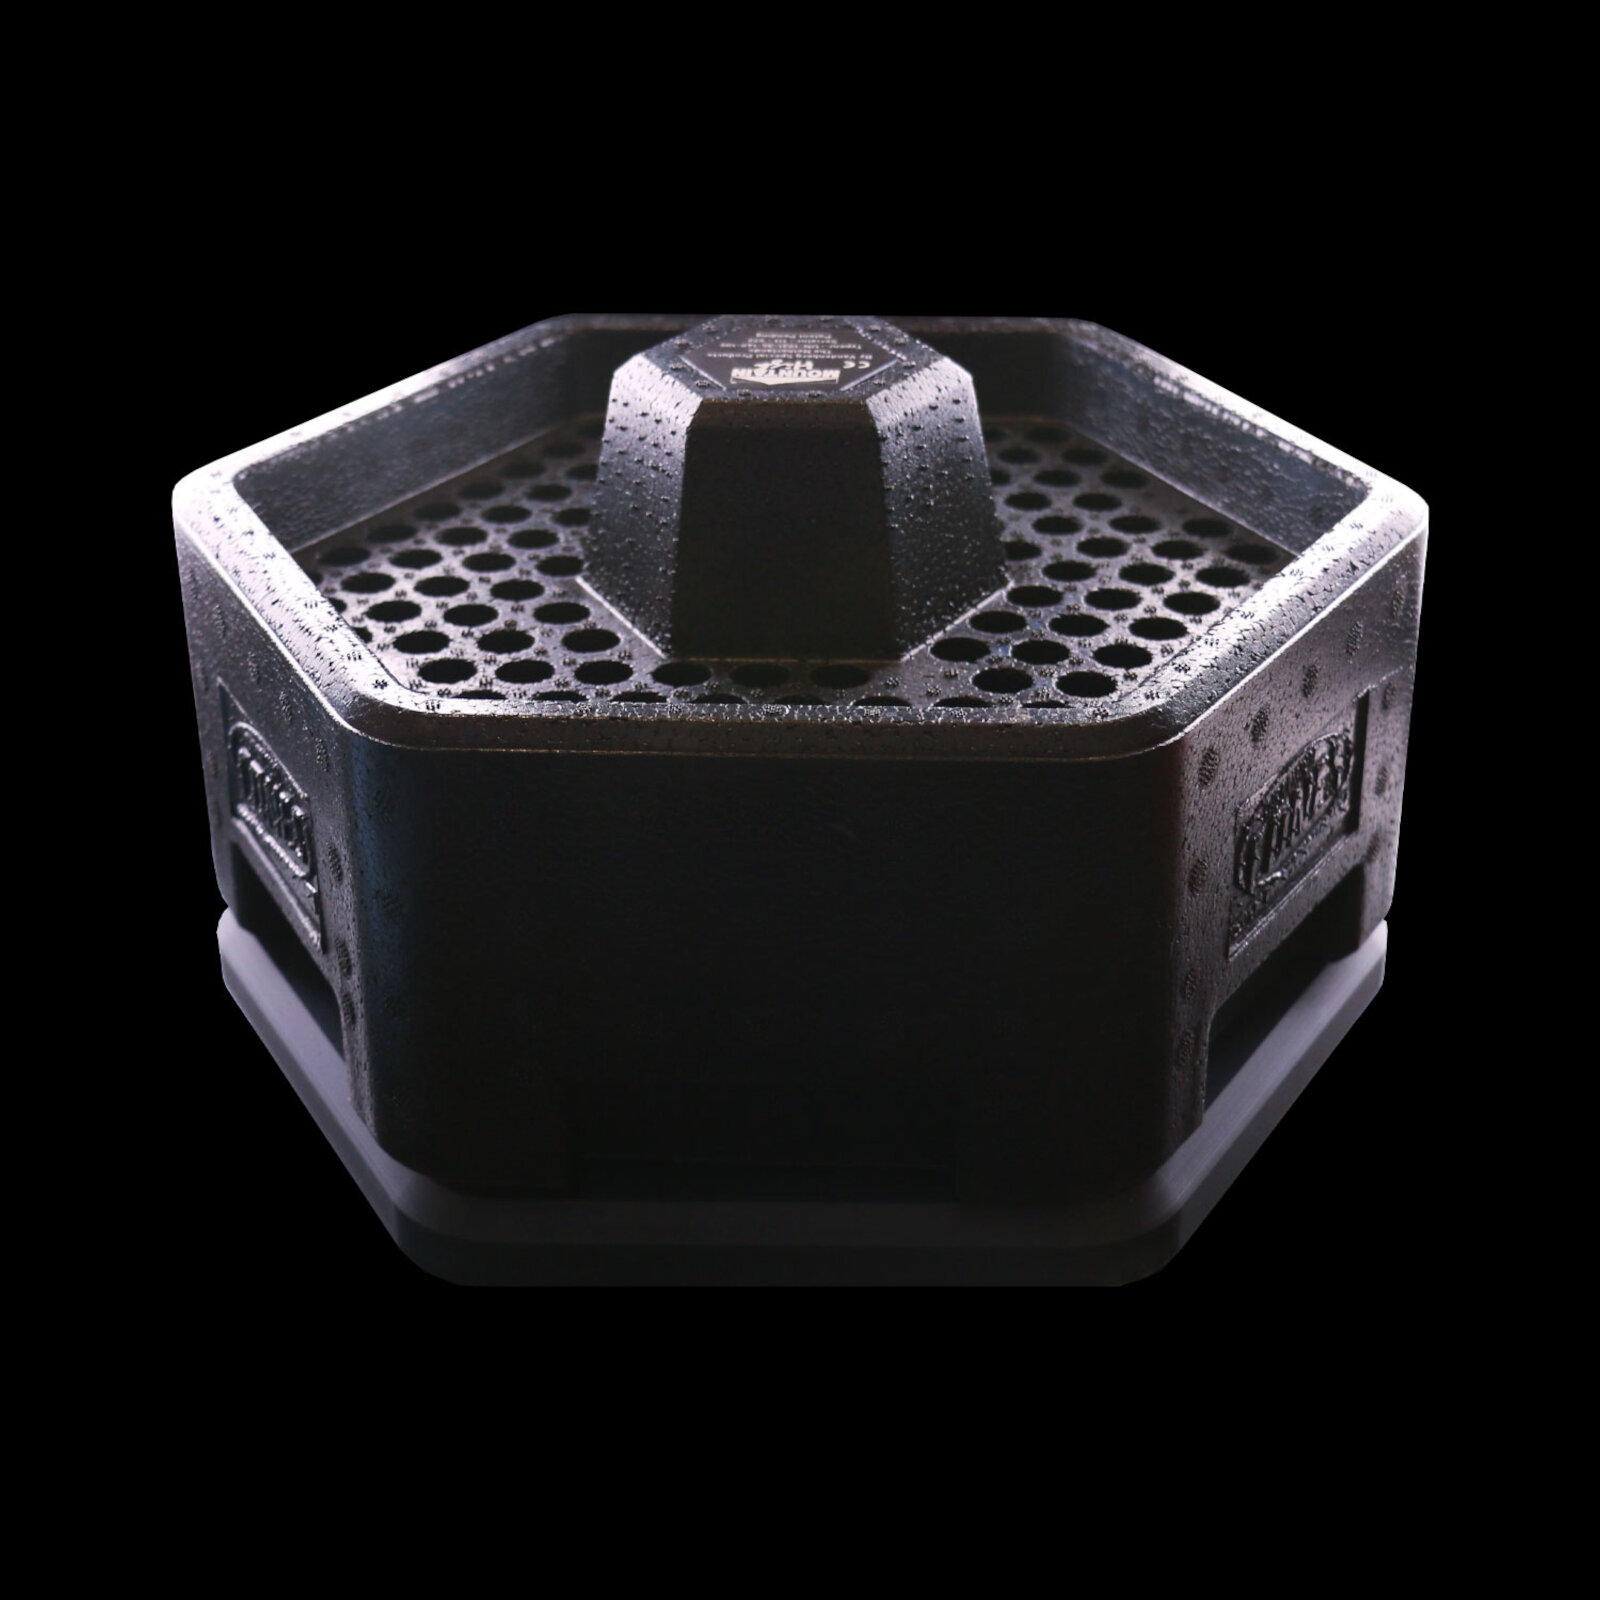 Joint-Füllmachine für 120 Cones | Cone Coolbox